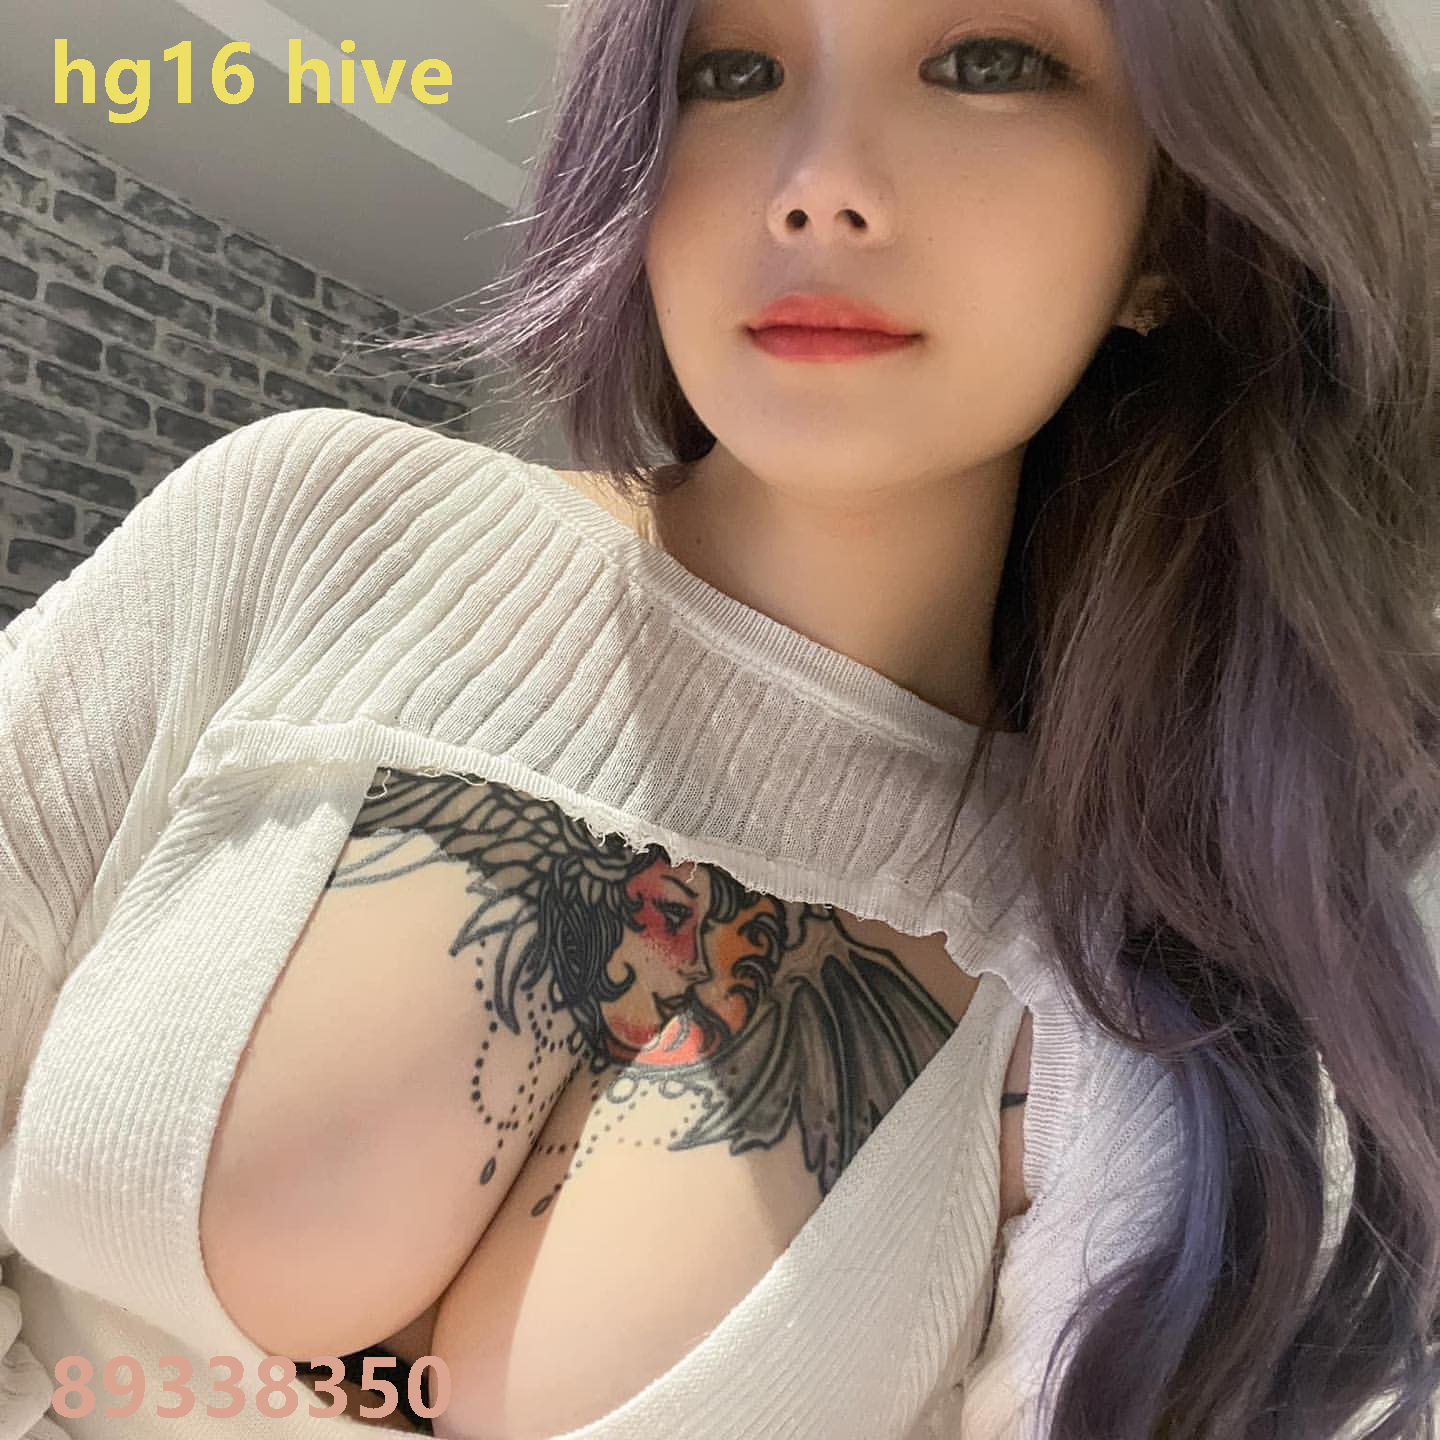 hg16 hive